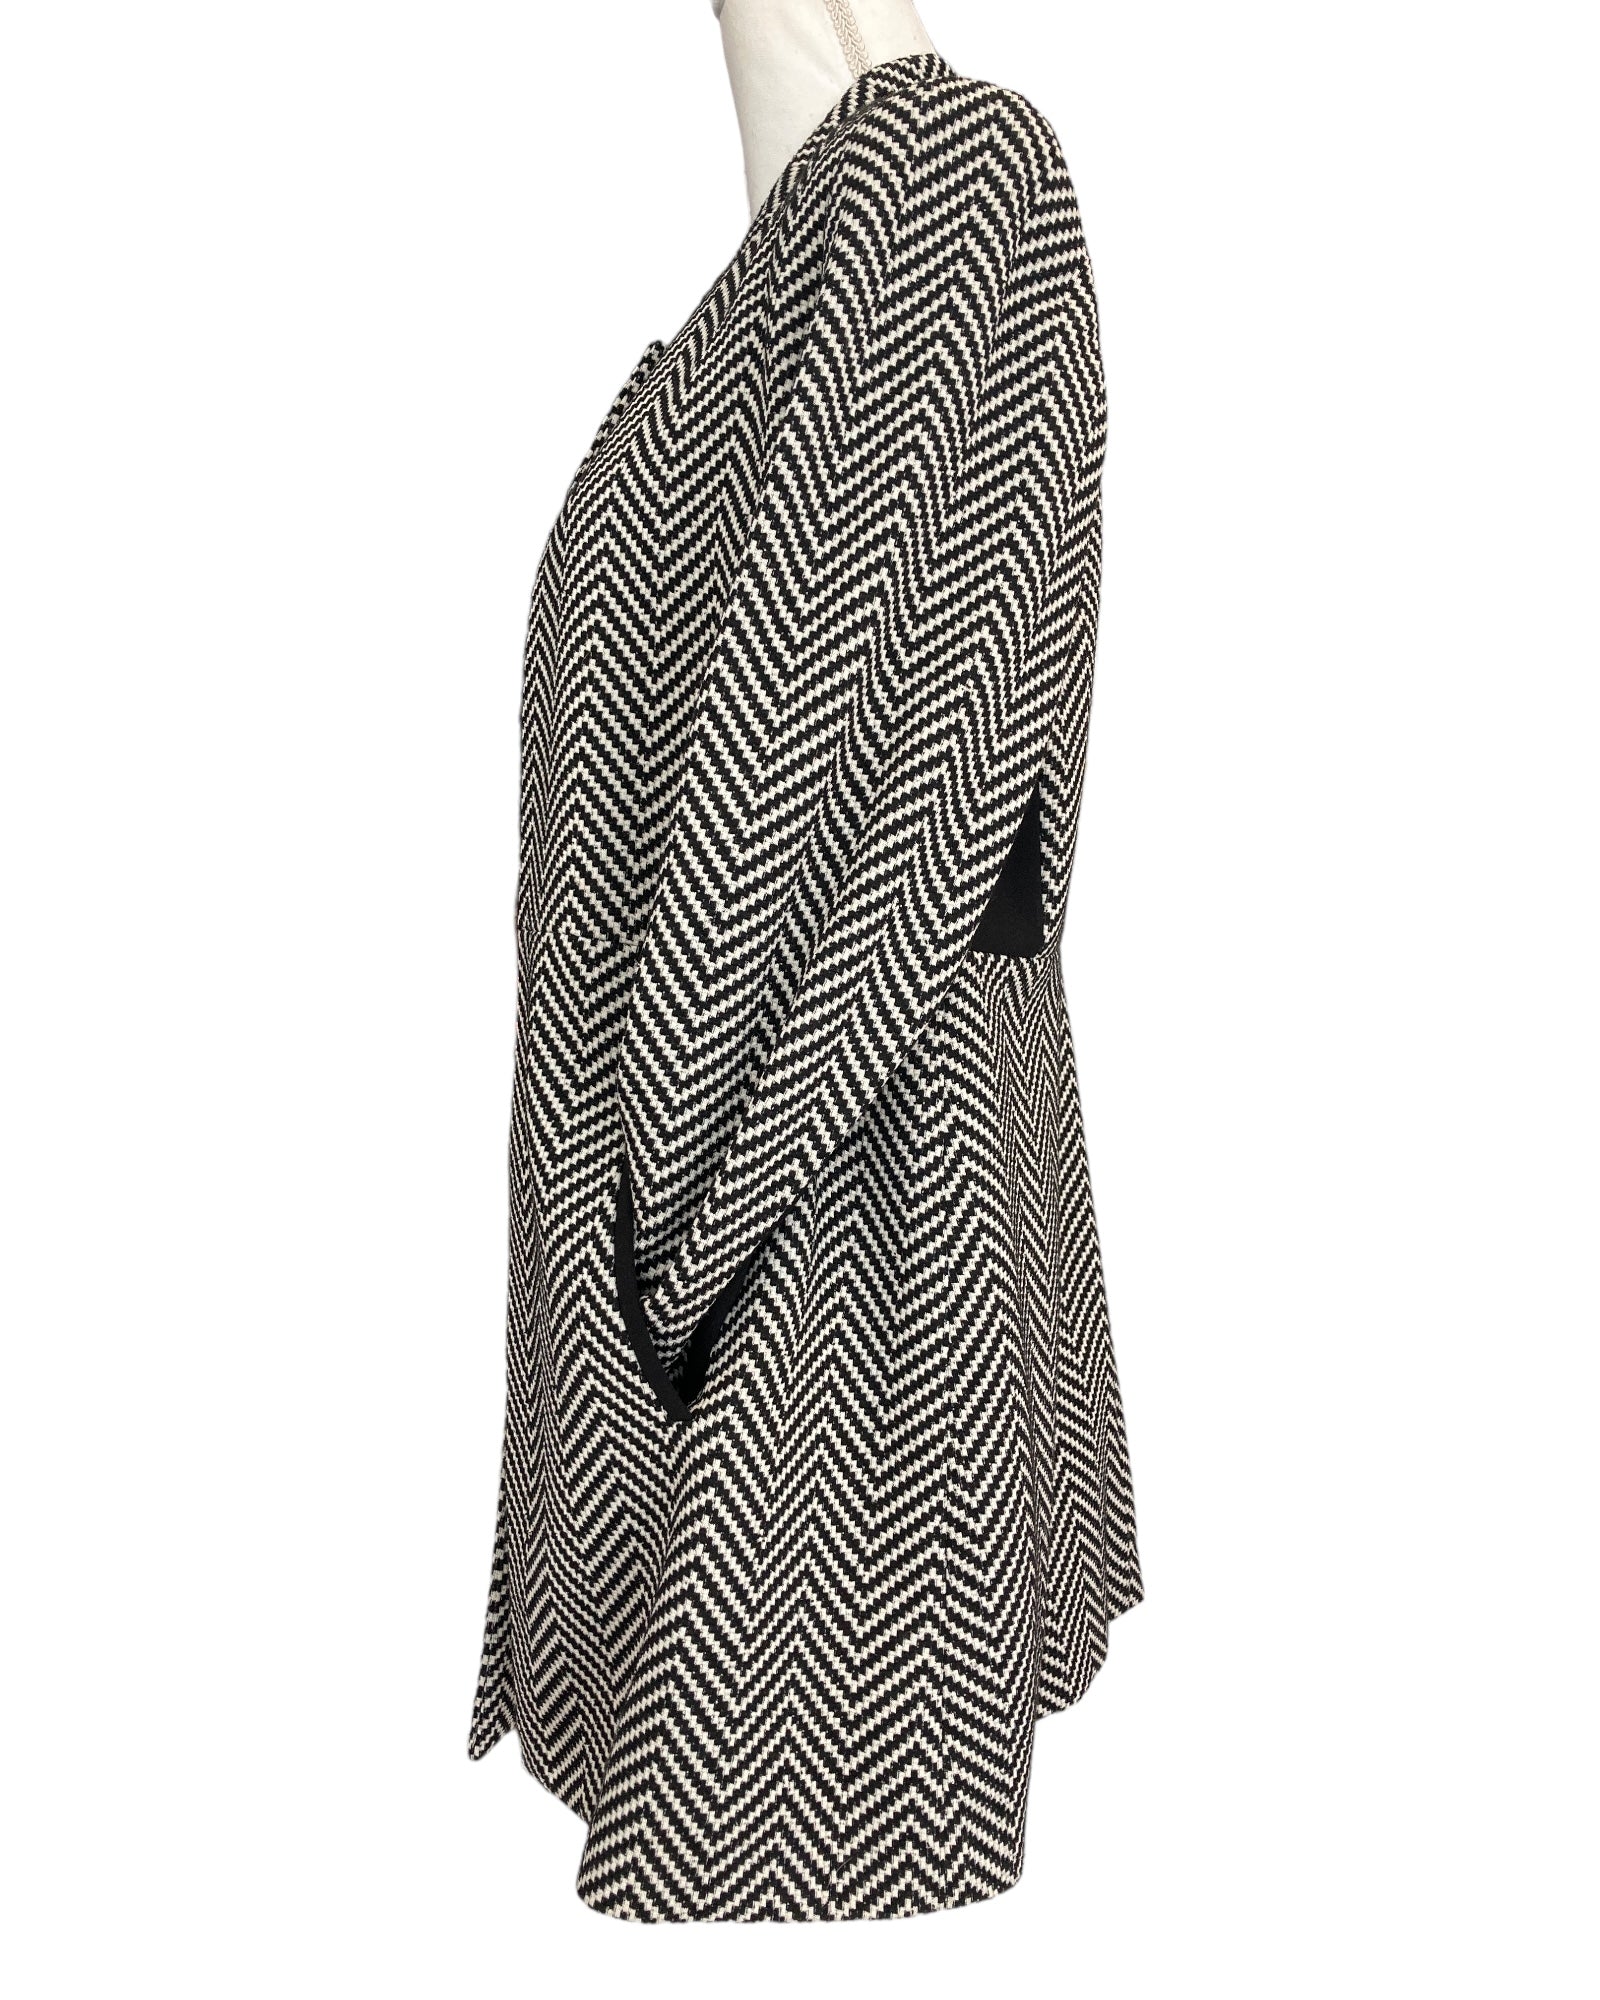 Albert Nipon Boutique Vintage Black and White Knit Suit, 8